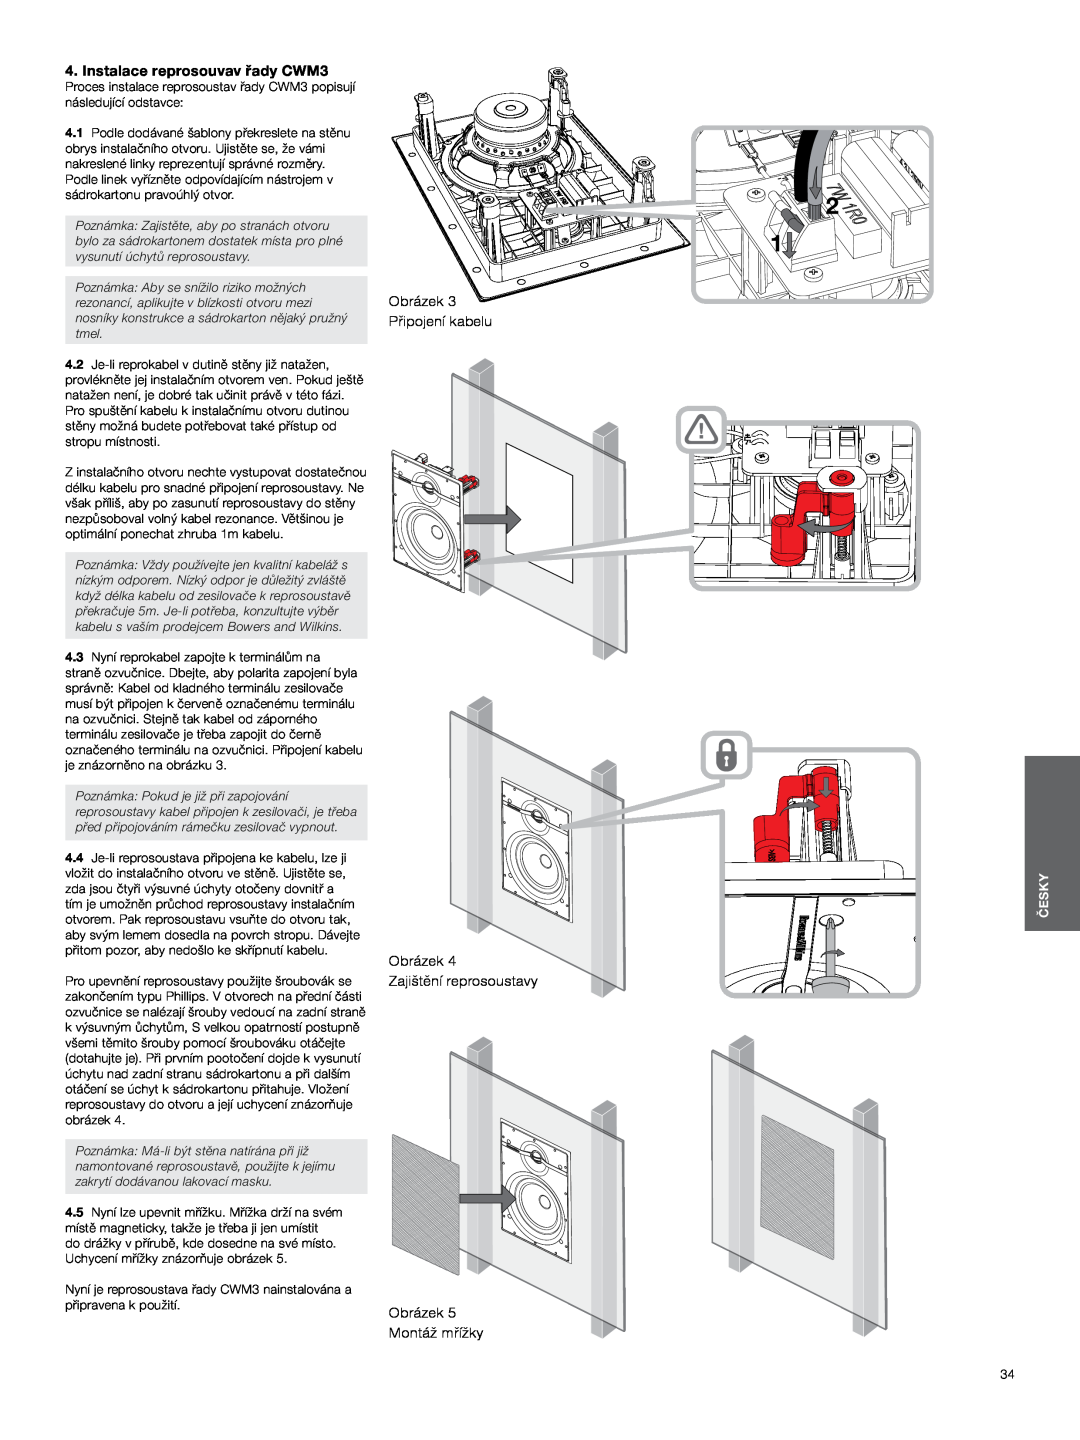 Bowers & Wilkins manual Instalace reprosouvav řady CWM3, Obrázek Připojení kabelu Obrázek, Česky 